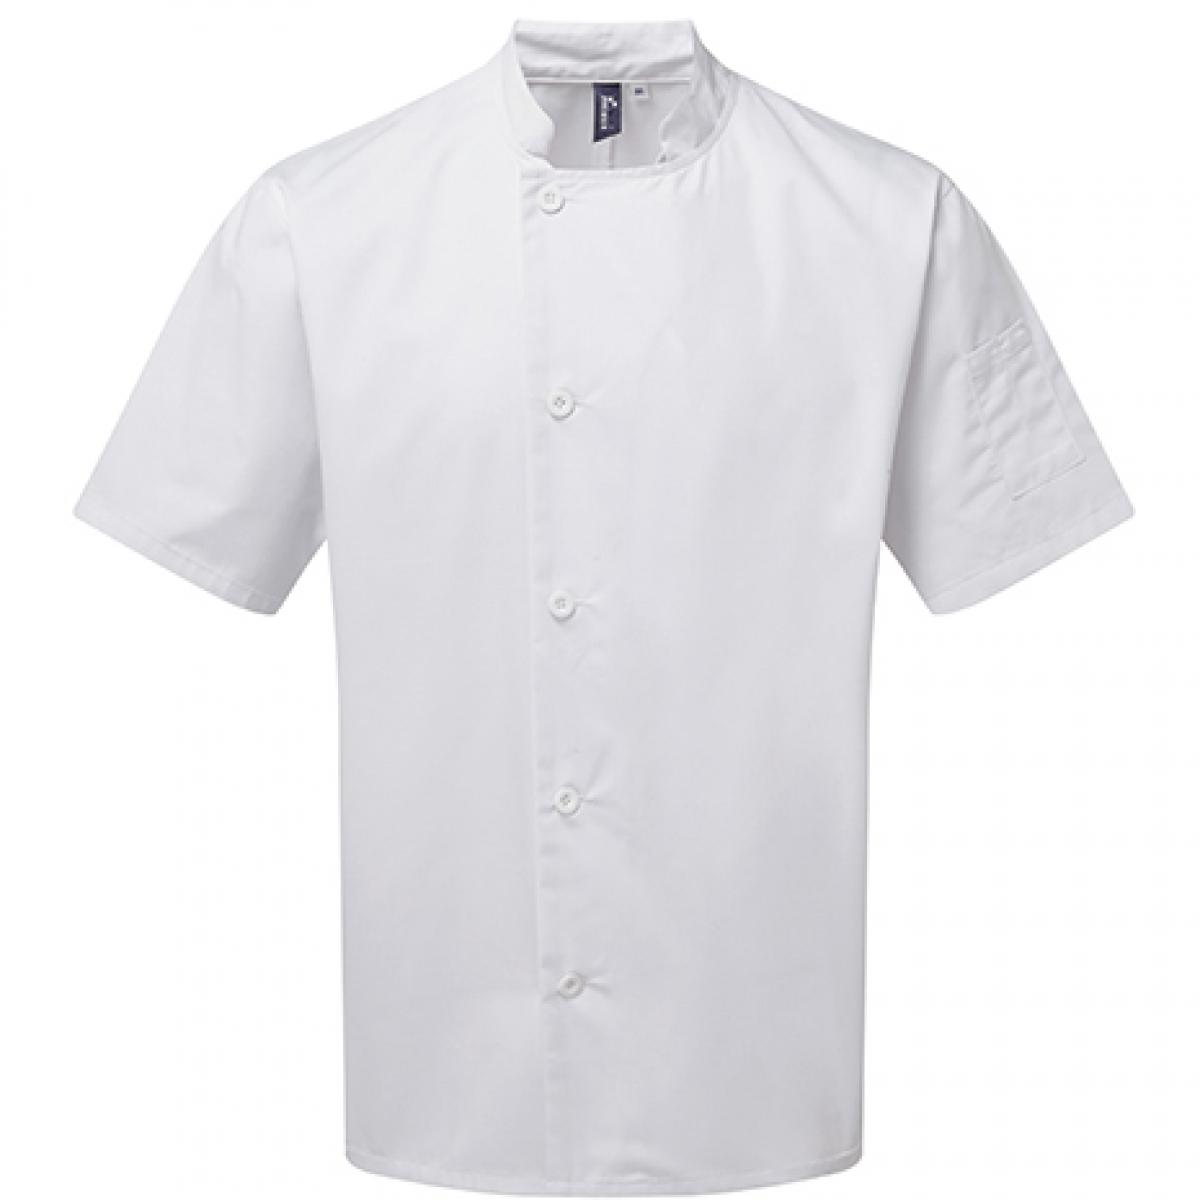 Hersteller: Premier Workwear Herstellernummer: PR900 Artikelbezeichnung: Kochjacke Essential Short Sleeve Chefs Jacket Farbe: White